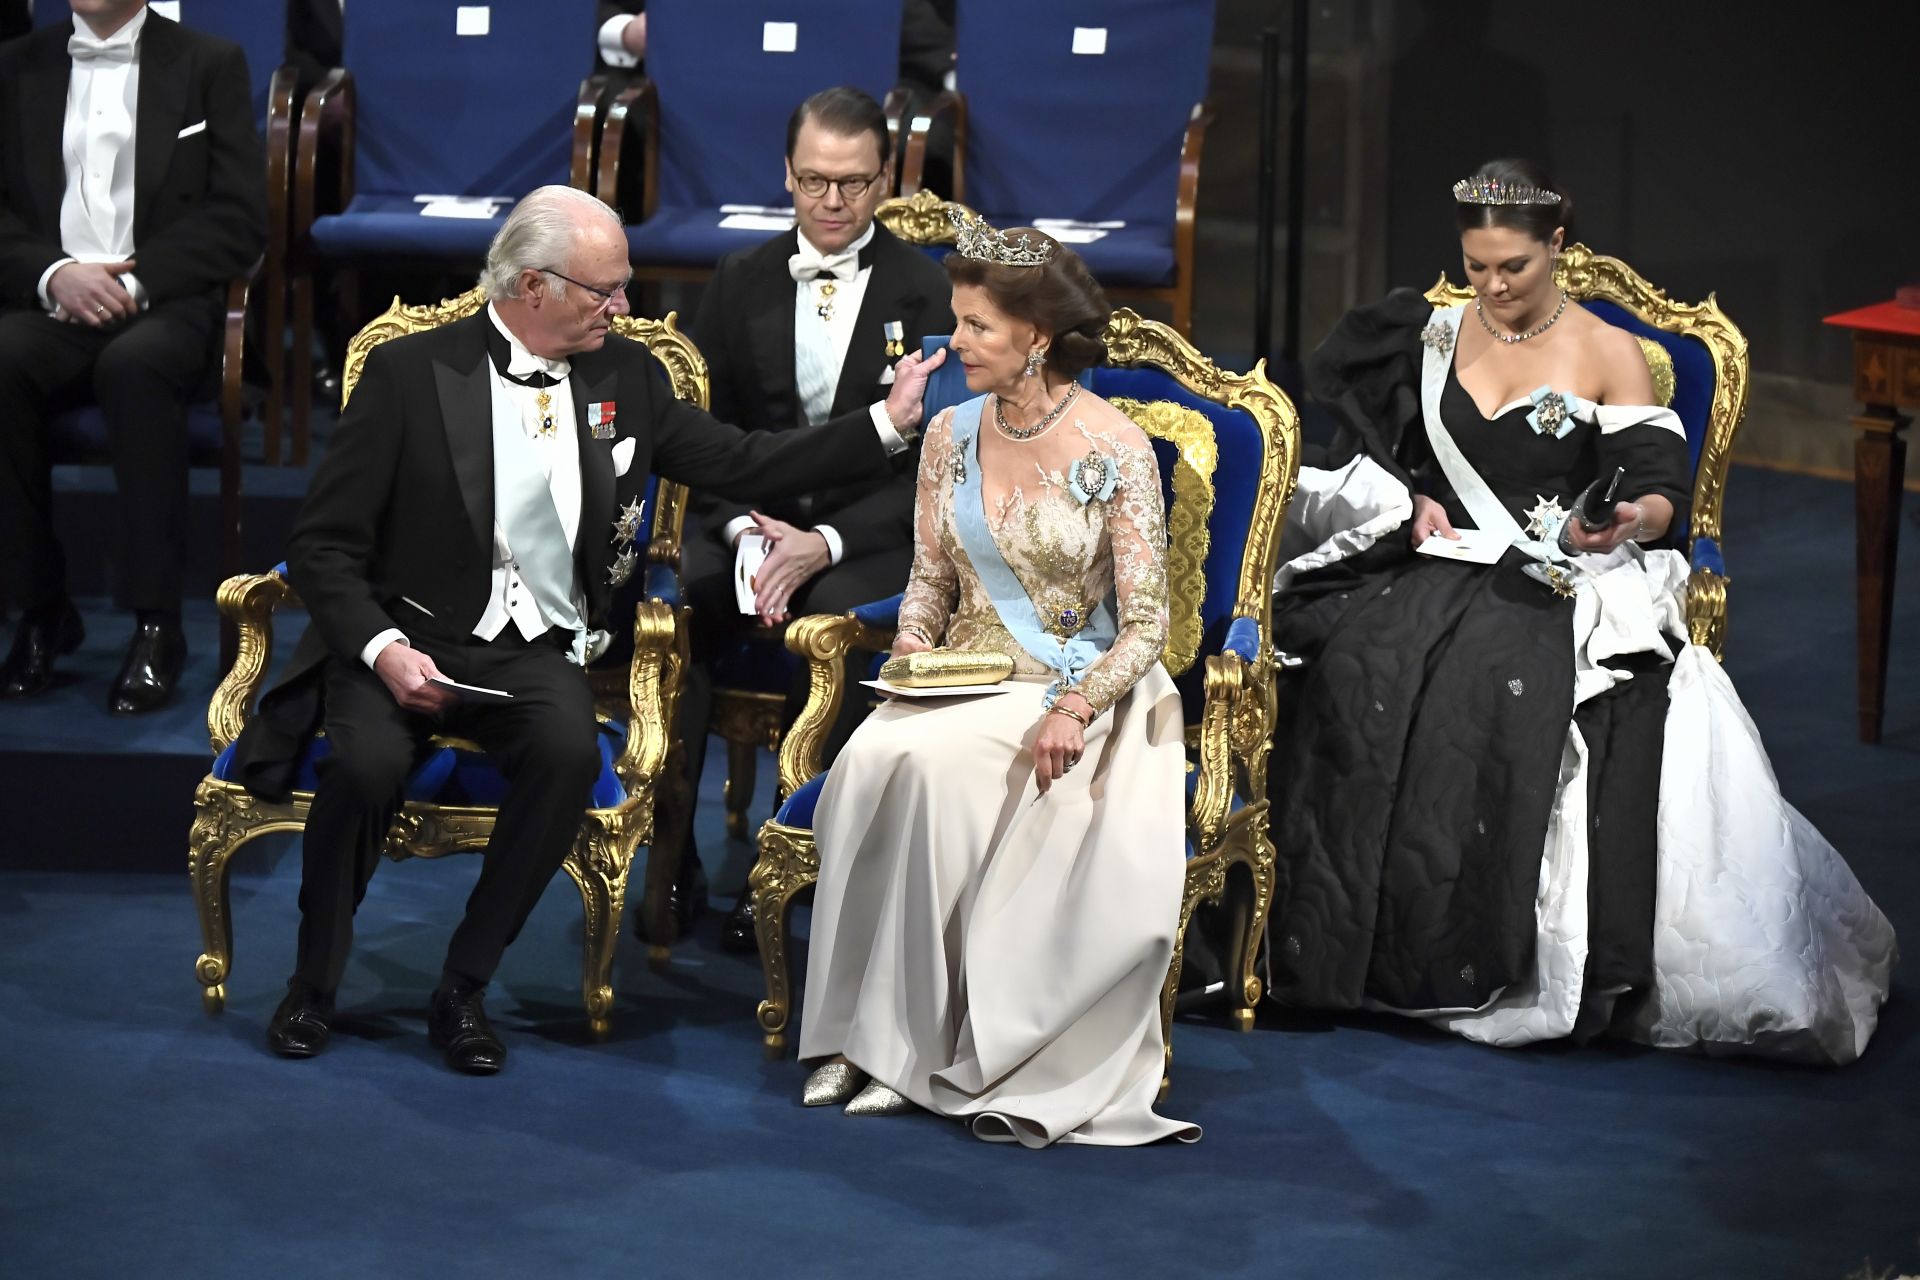 Кралят на Швеция Карл Густаф оправя възглавница на кралица Силвия на церемонията по награждаването на Нобел в Концертната зала в Стокхолм